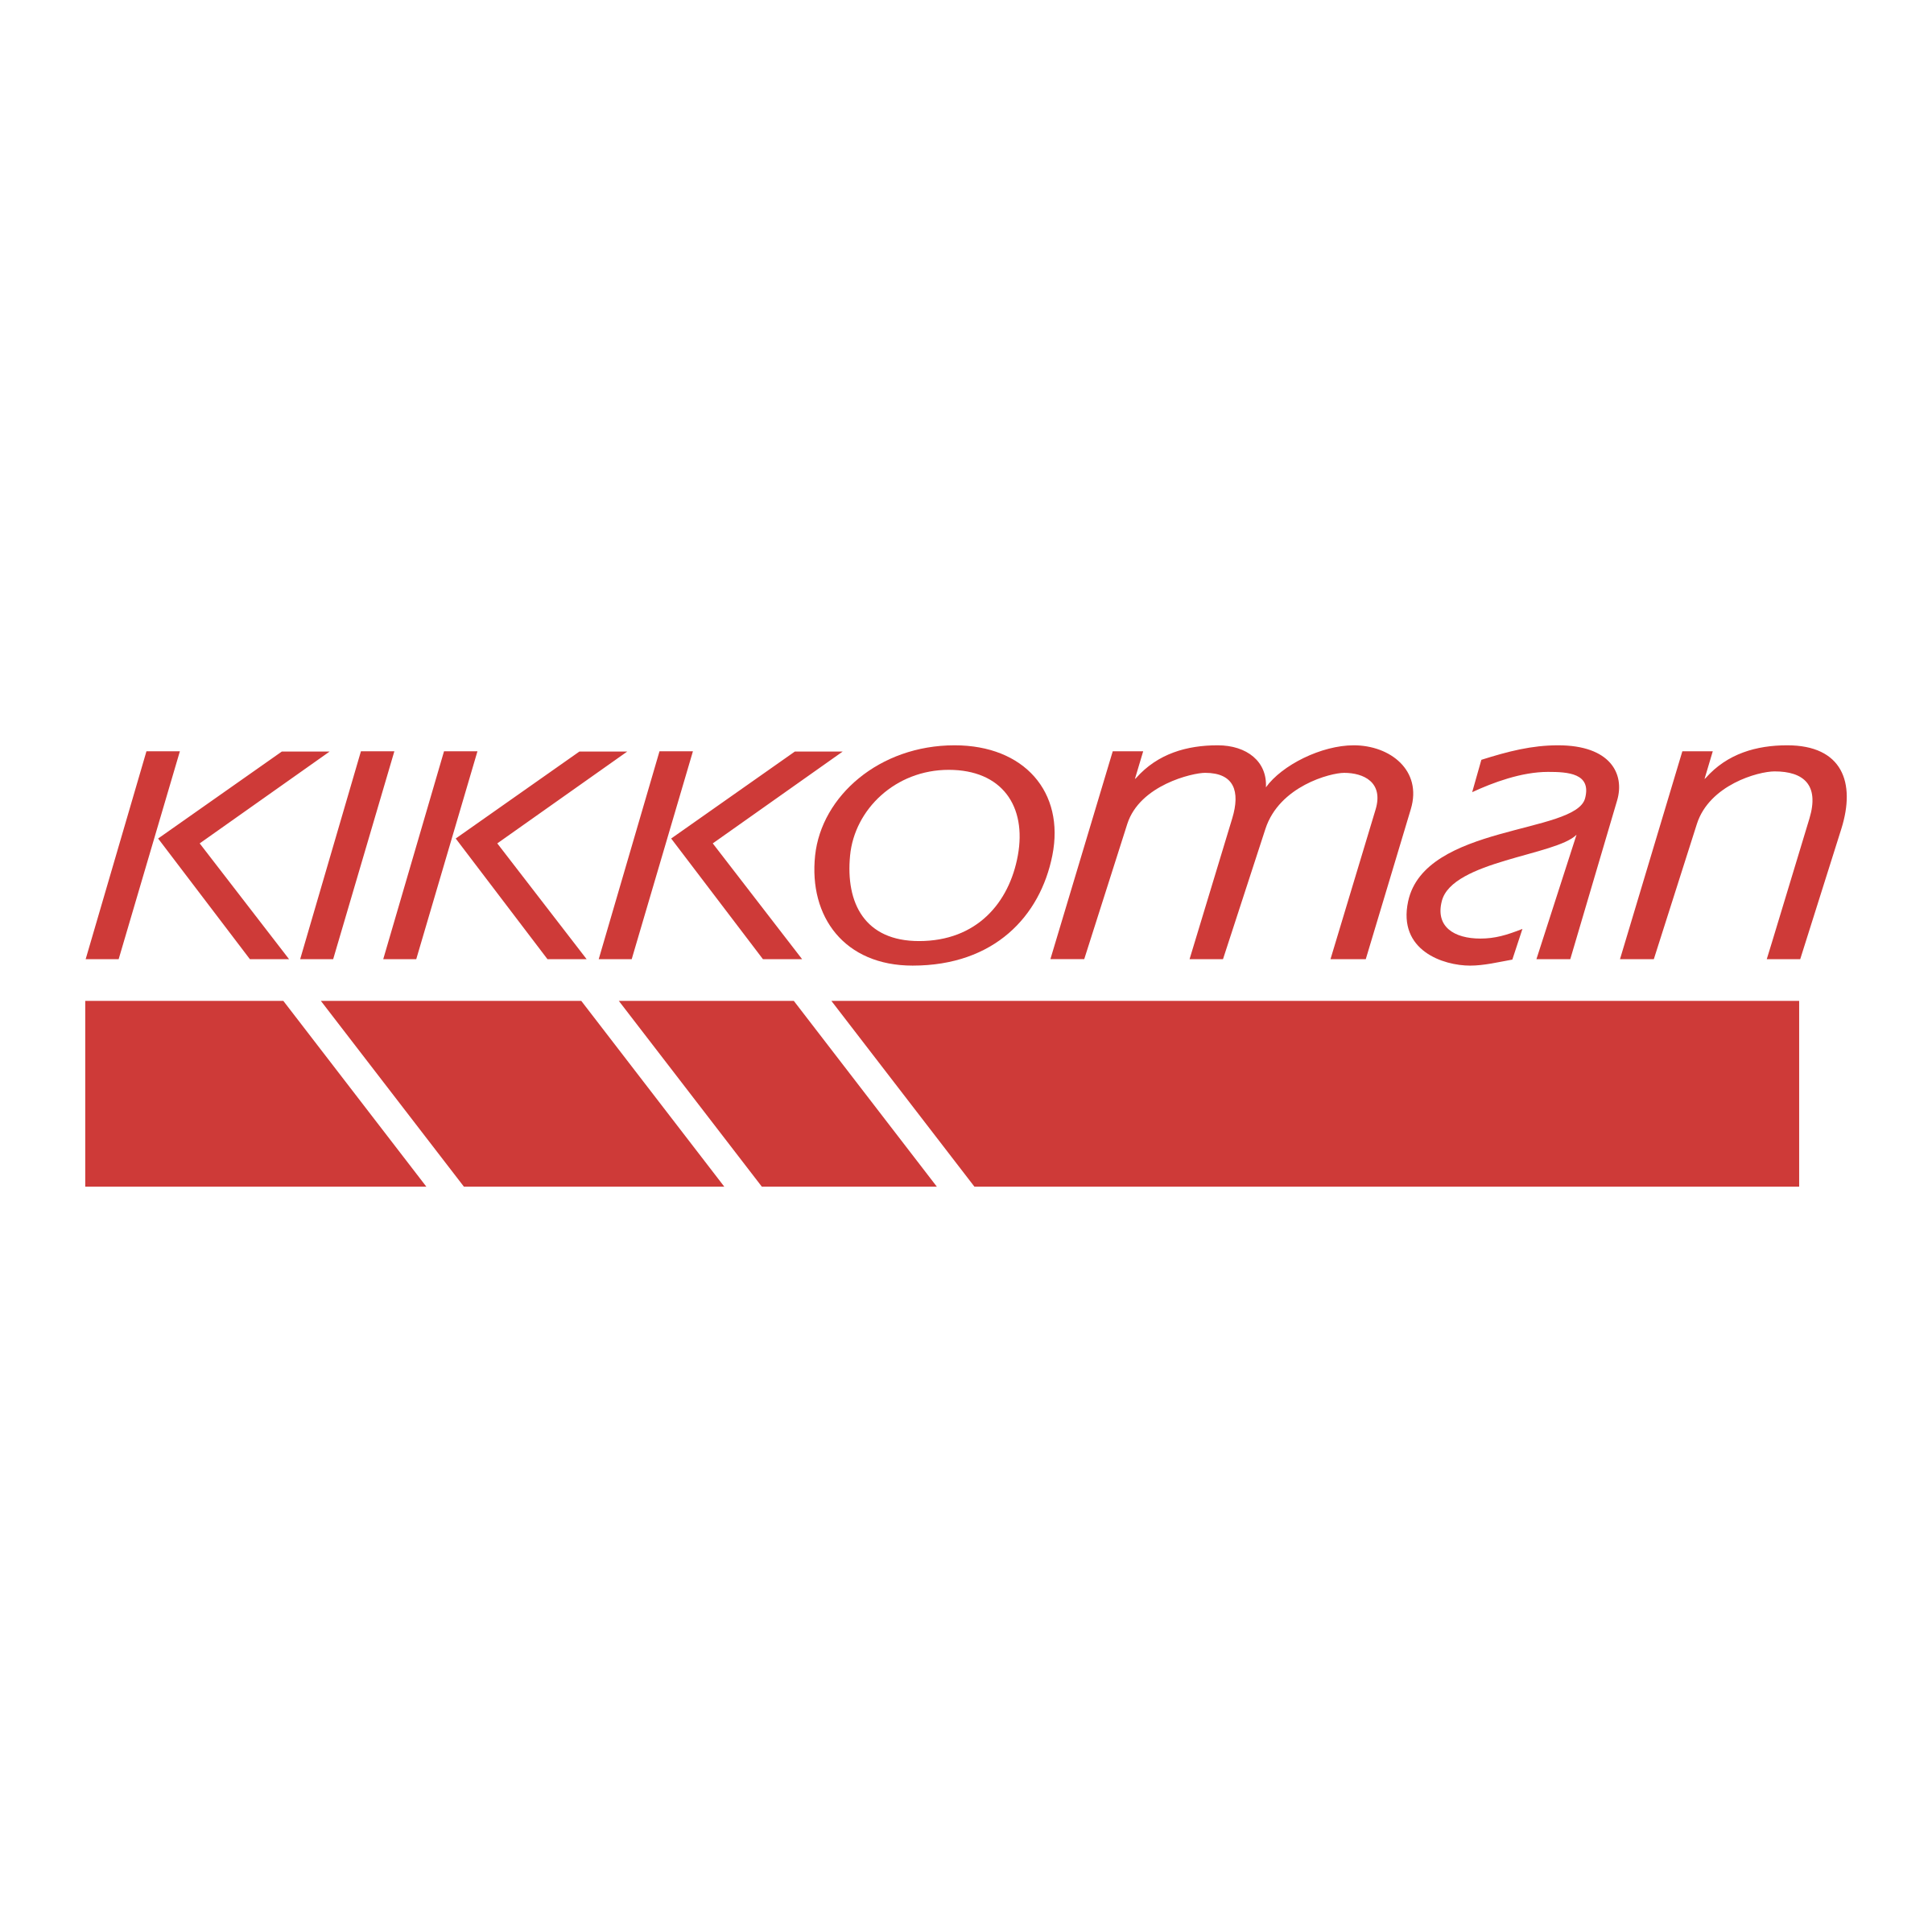 Kikkoman Logo - Kikkoman Logo PNG Transparent & SVG Vector